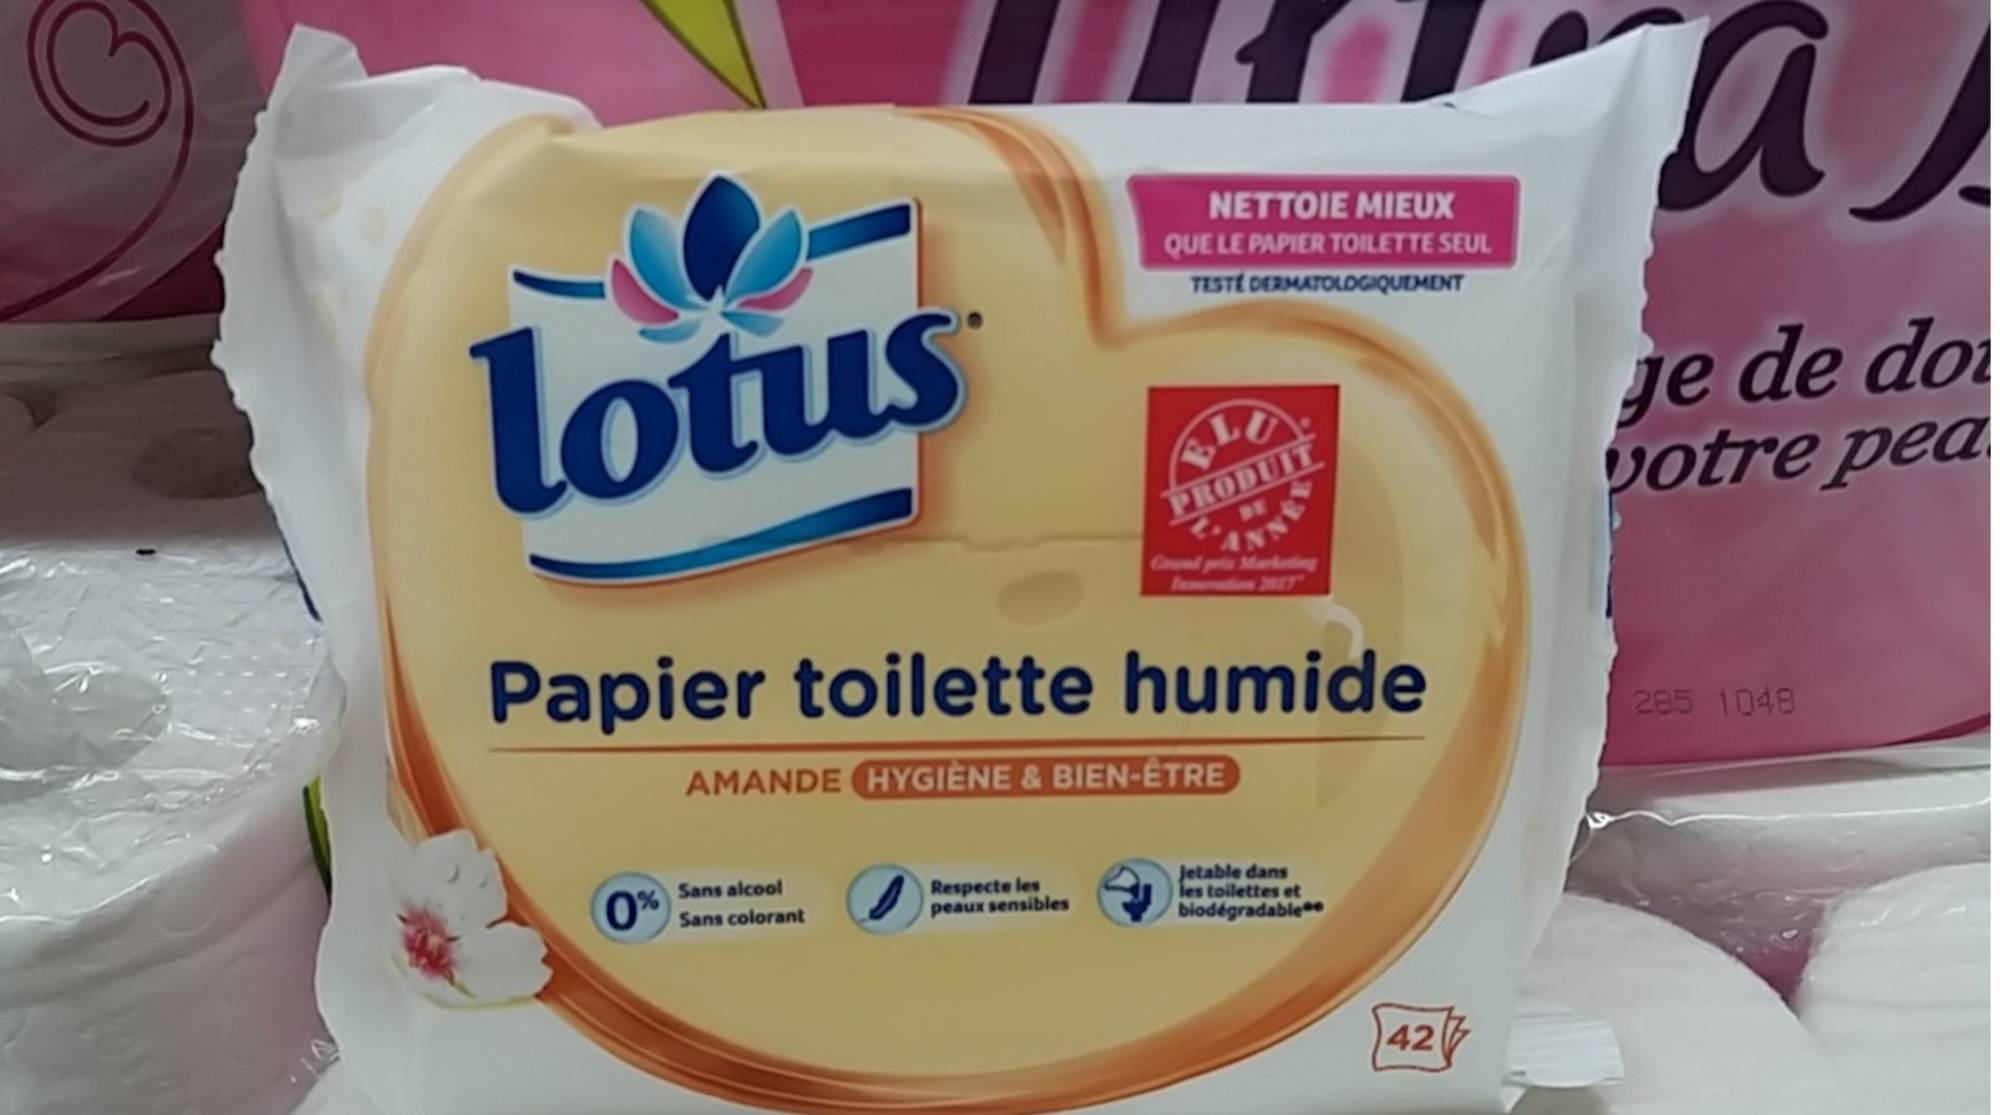 Test papier toilette humide Lotus - La vie d'Emilie